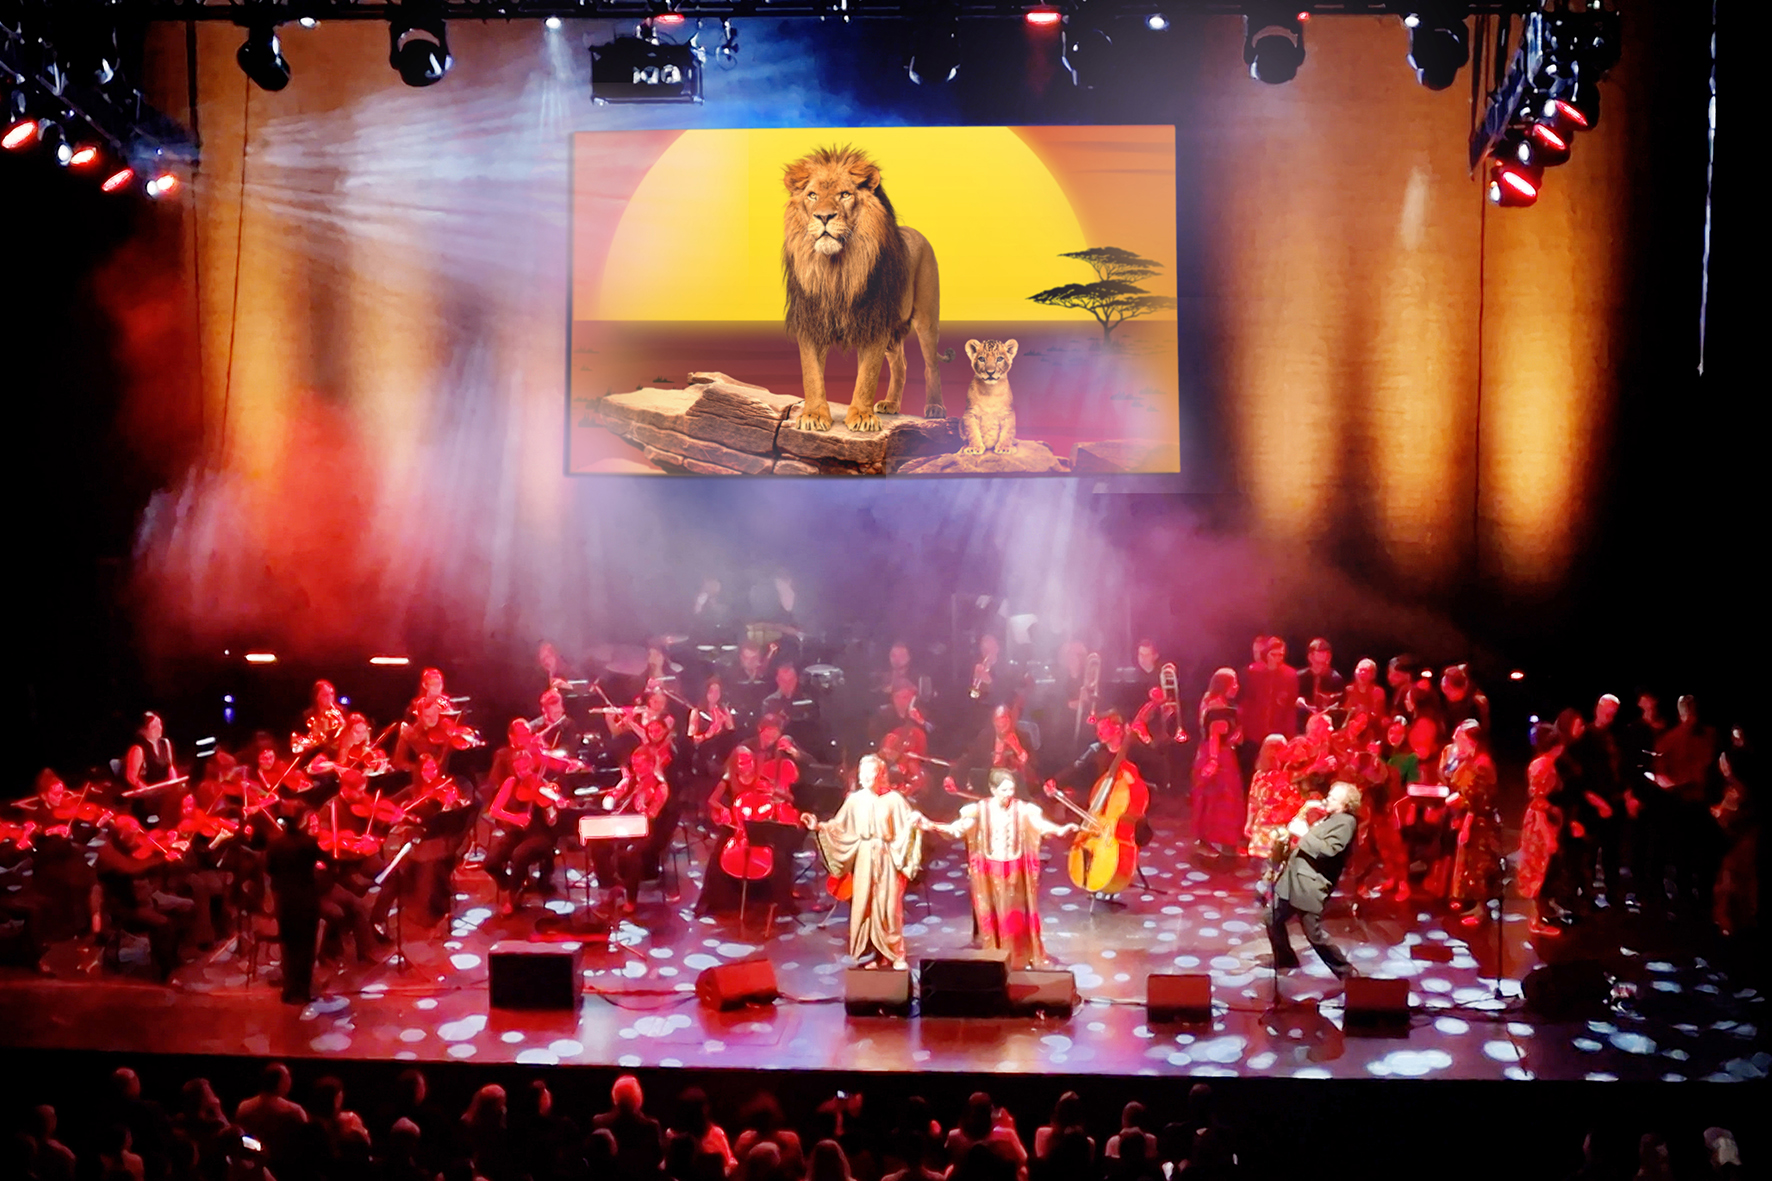 Eine bunt beleuchtete Bühne mit Orchester und Sänger*innen. Im HIntergrund eine Leinwand, auf der ein Löwe zu sehen ist.